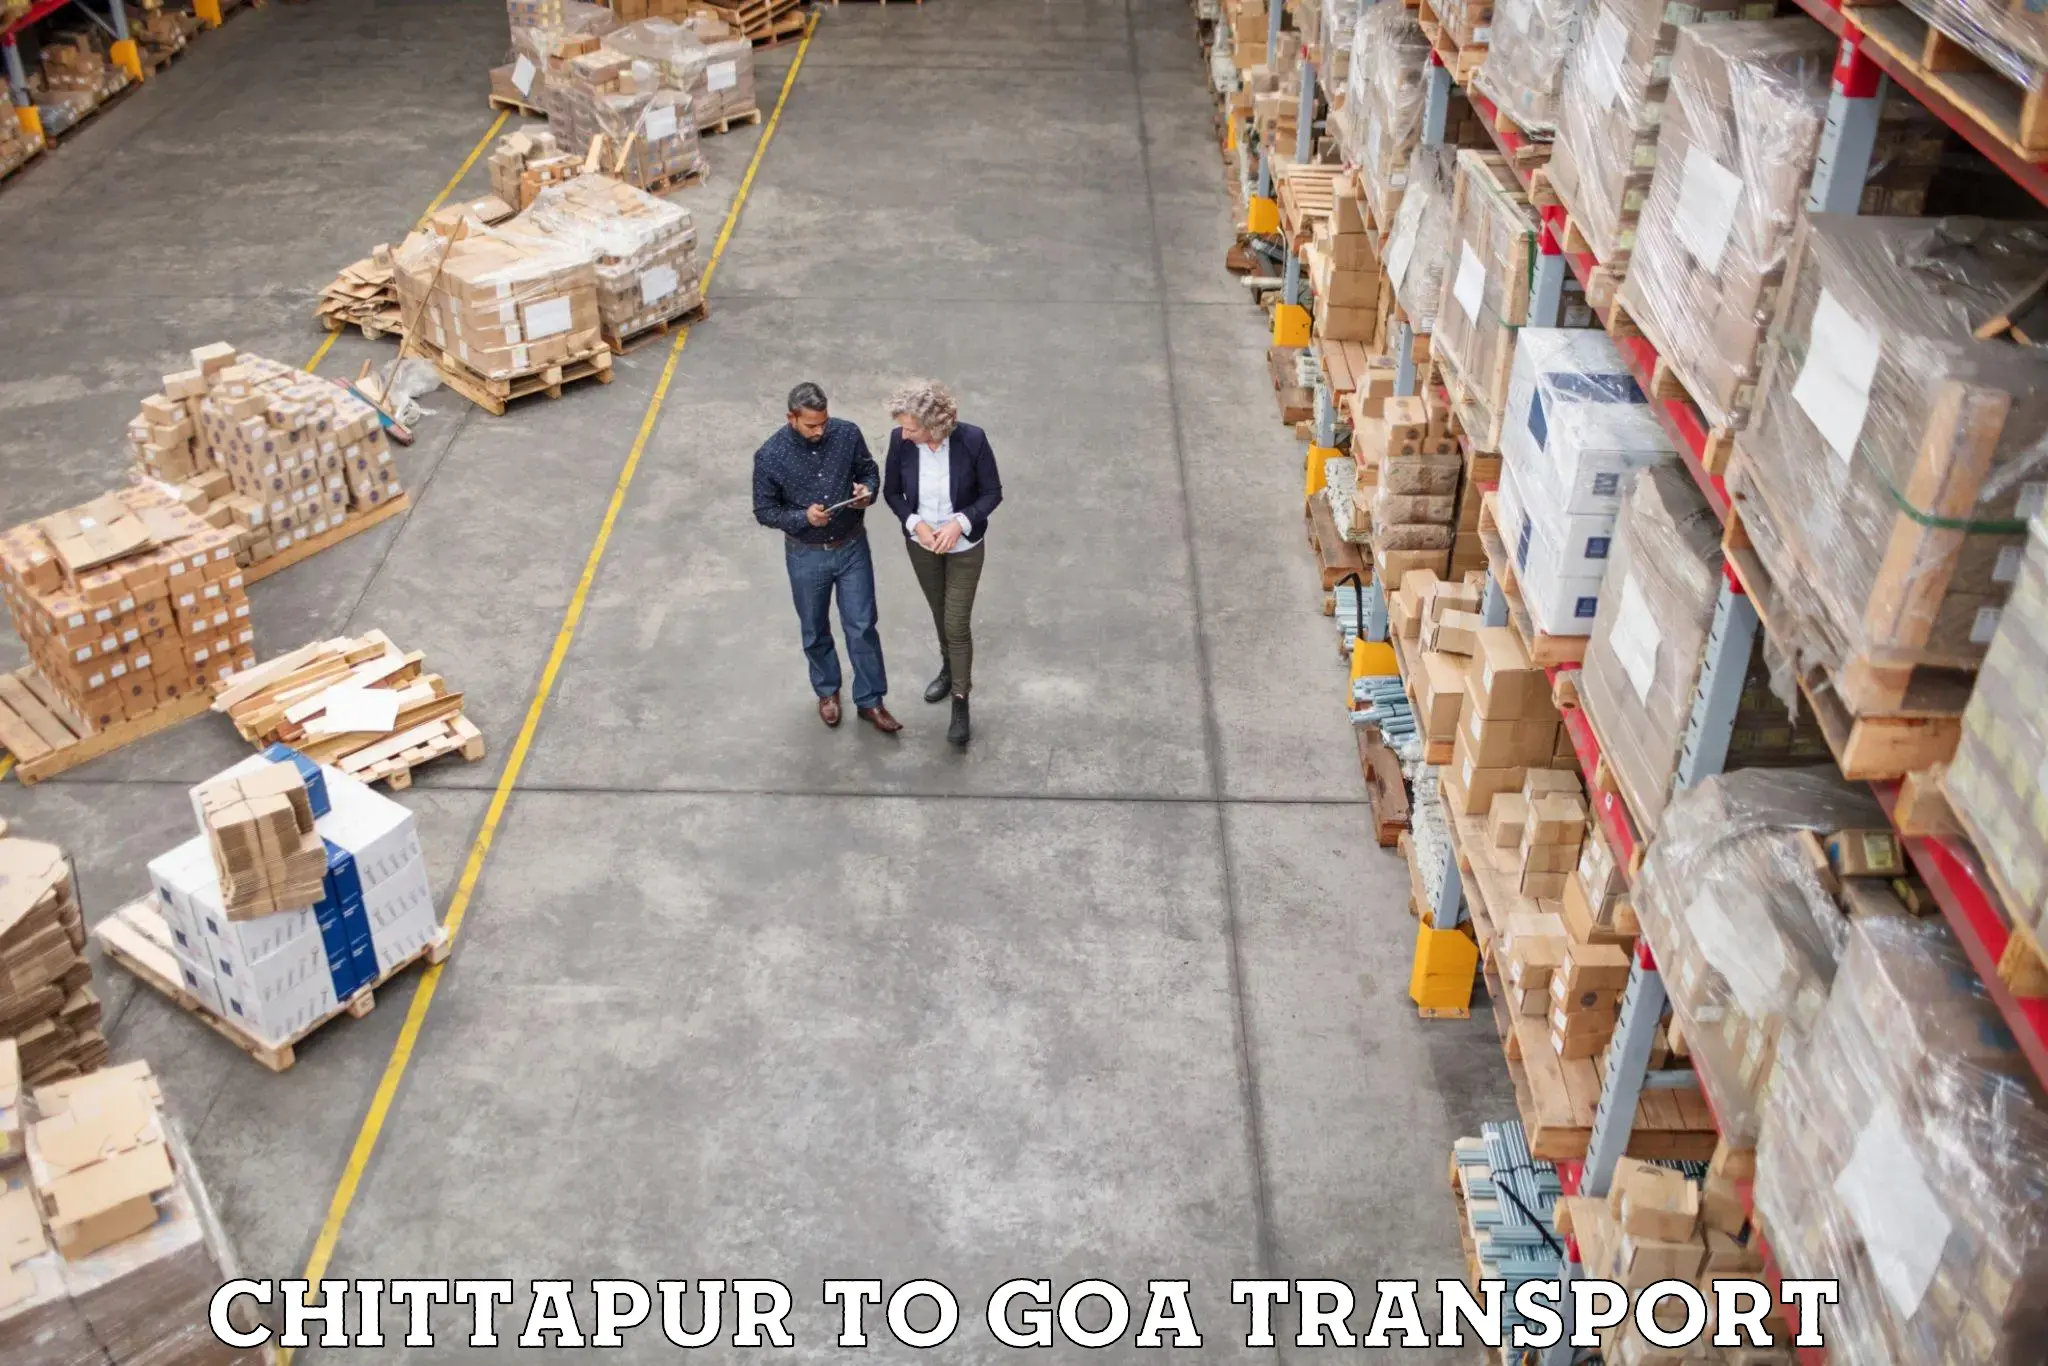 Commercial transport service Chittapur to Vasco da Gama